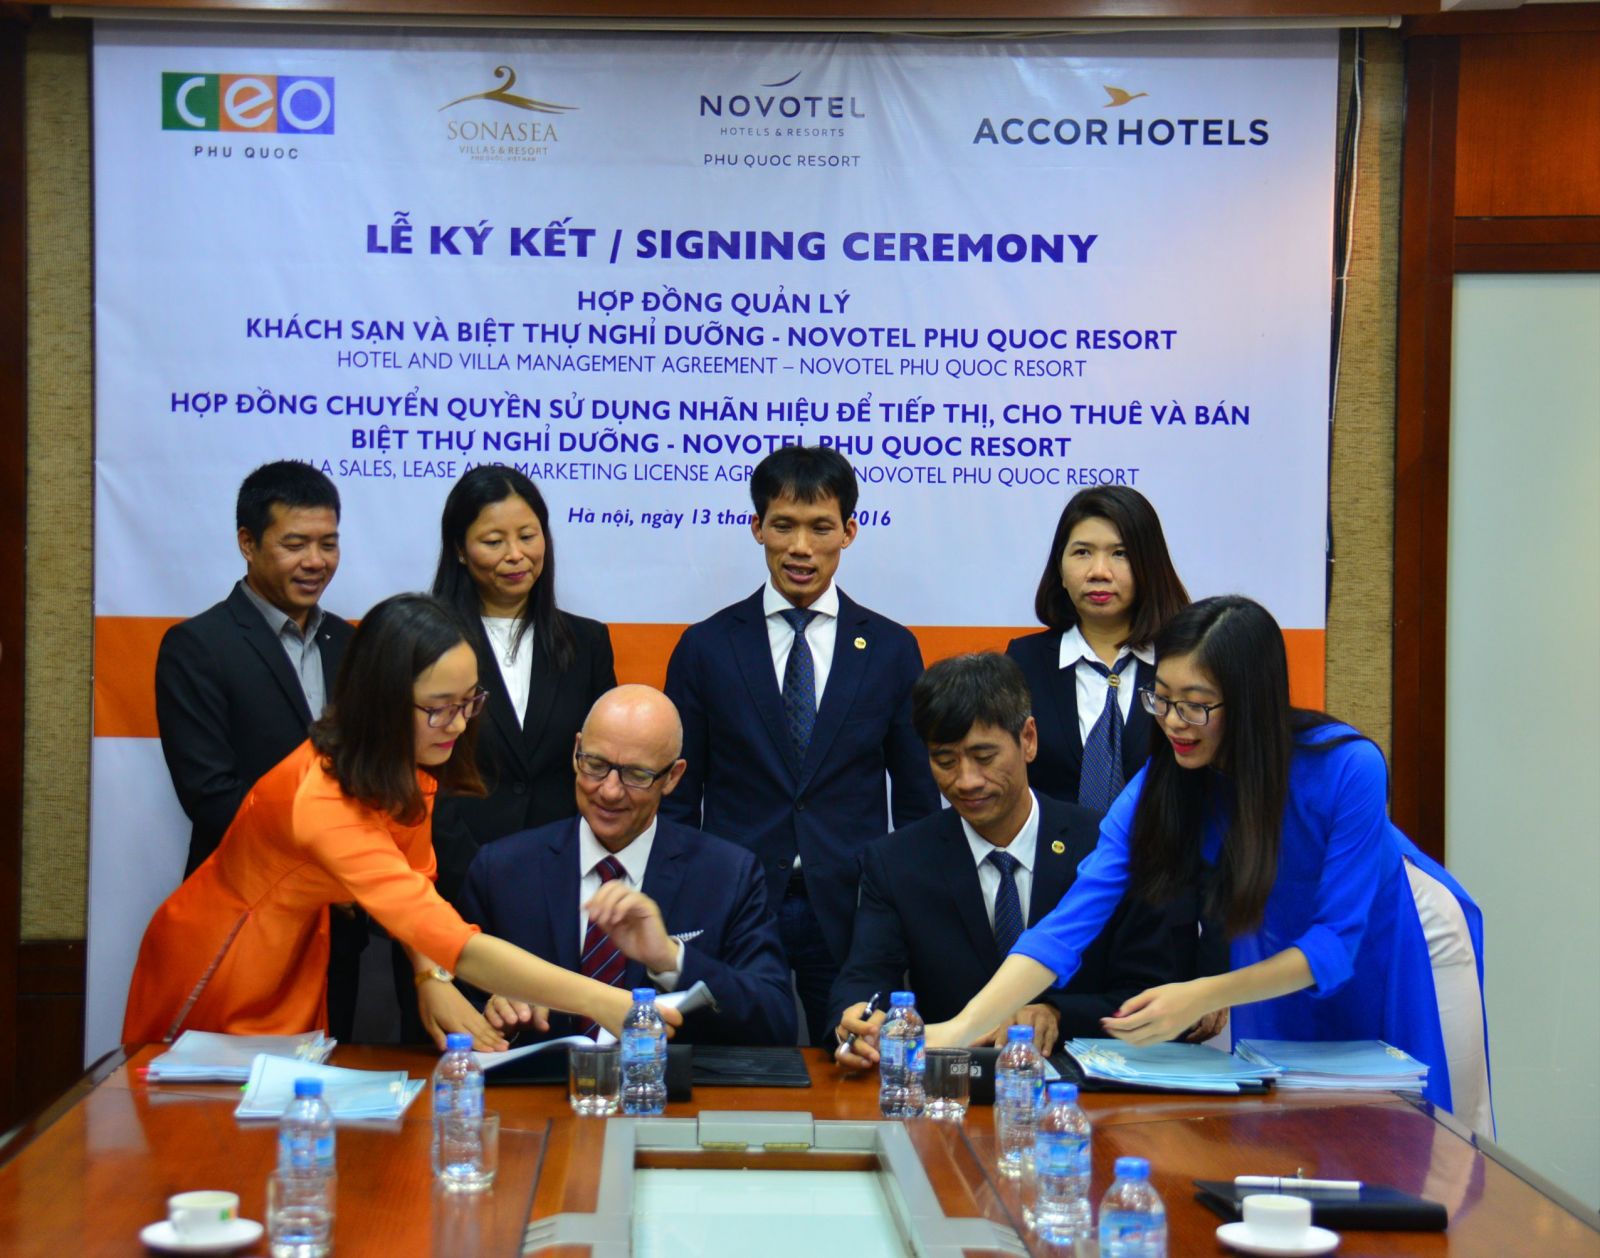 Tập đoàn Accor sẽ quản lý gần 400 phòng khách sạn và biệt thự Novotel Phu Quoc Resort 